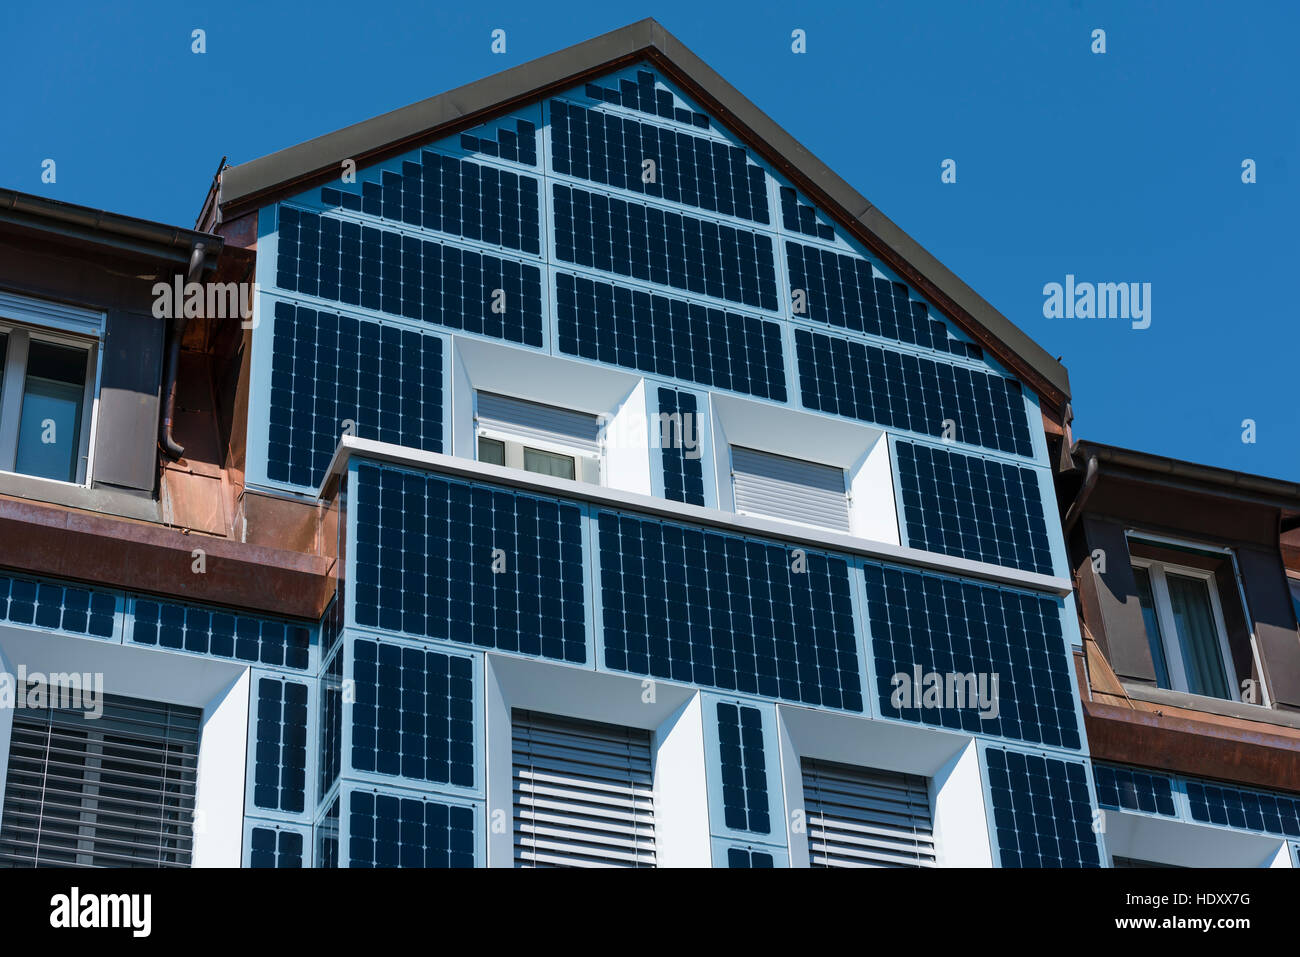 Façade d'une maison d'habitation à Zurich, Suisse, entièrement recouverte de cellules solaires. Banque D'Images